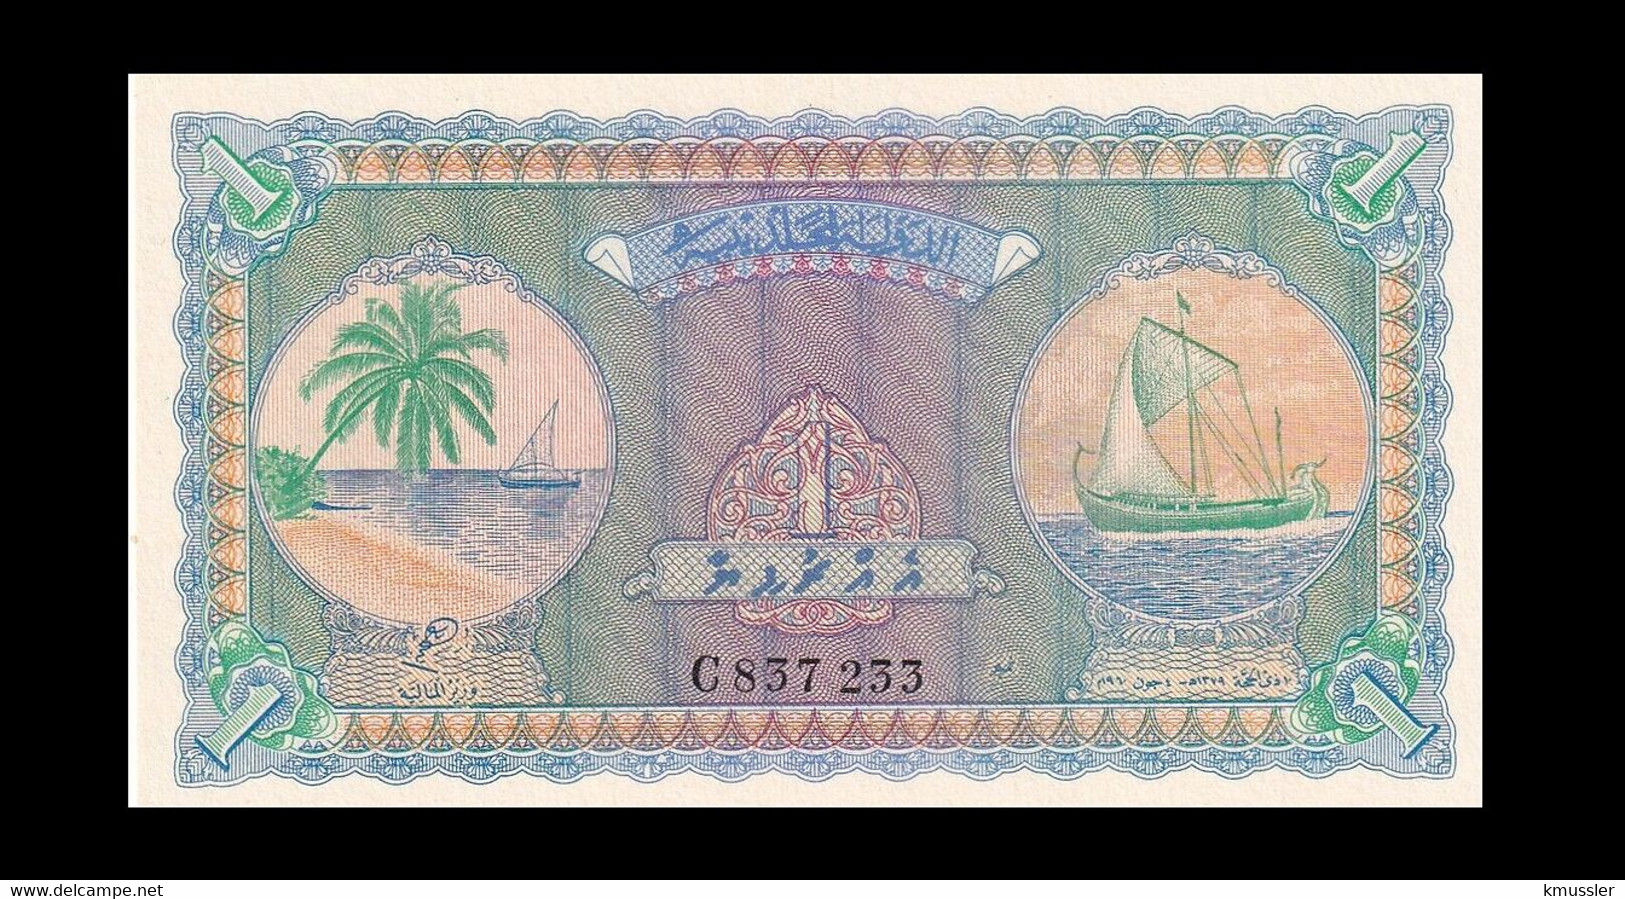 # # # Seltene ältere Banknote Malediven (Maledives) 1 Rufiya UNC # # # - Maldives